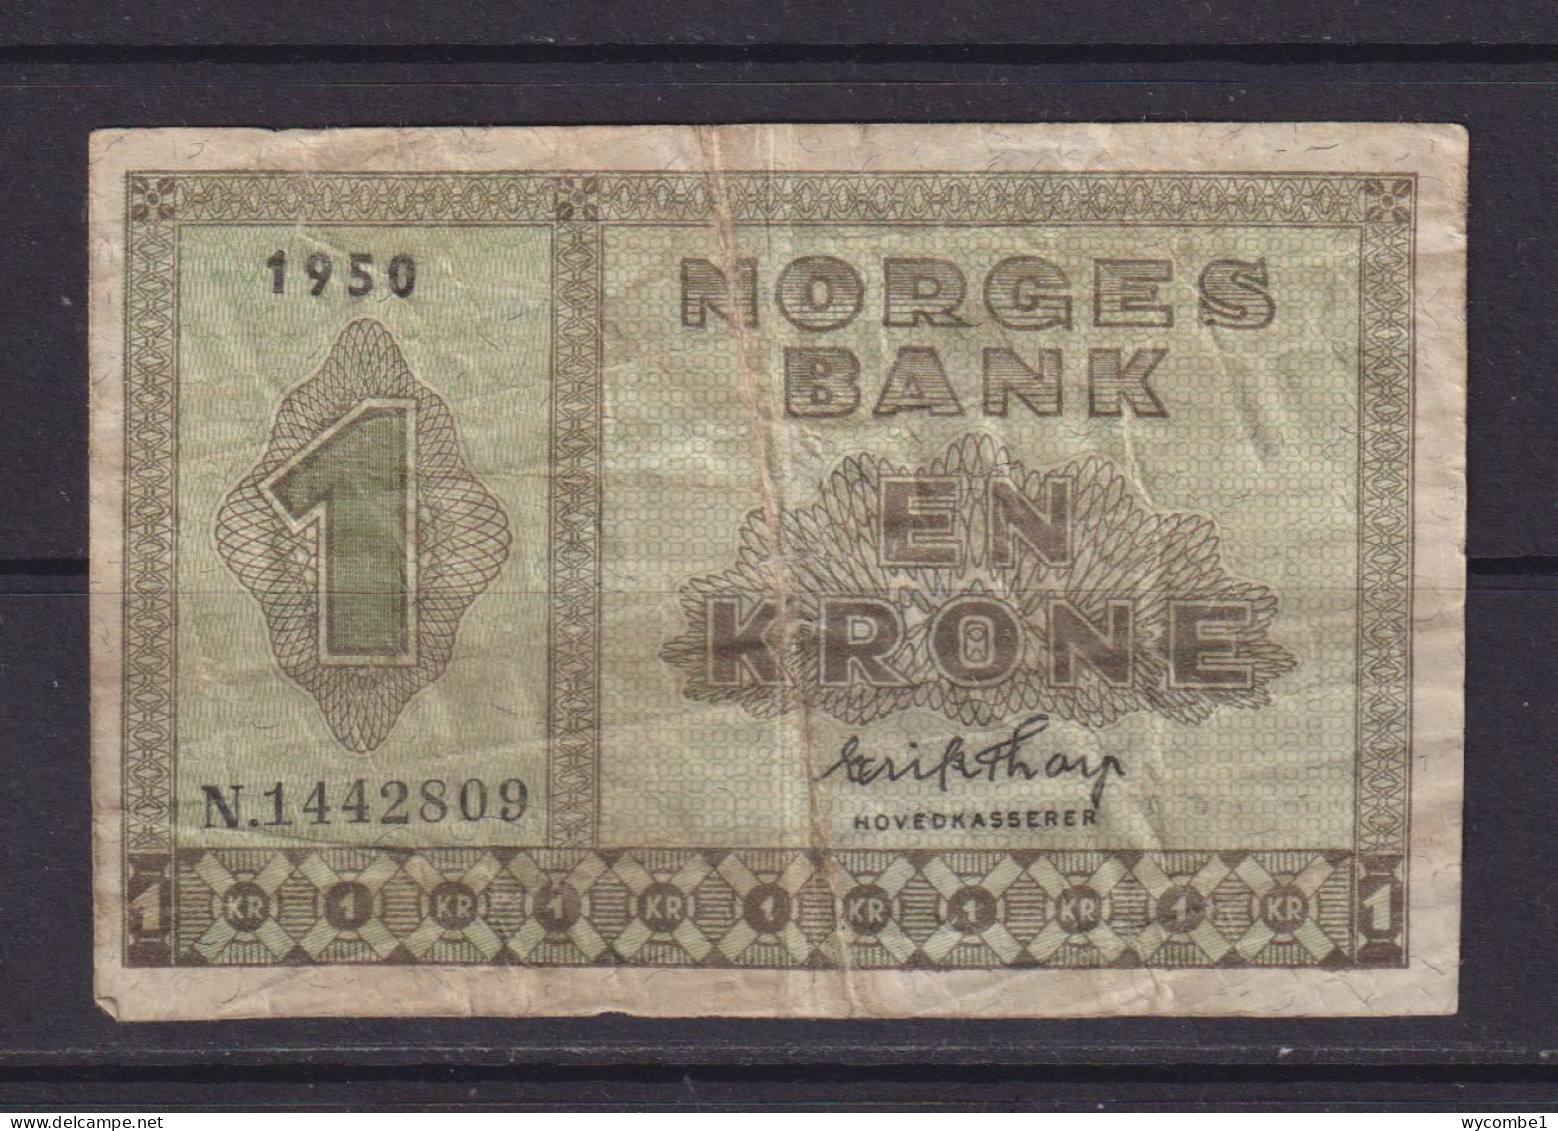 NORWAY - 1950 1 Krone Circulated Banknote - Norwegen